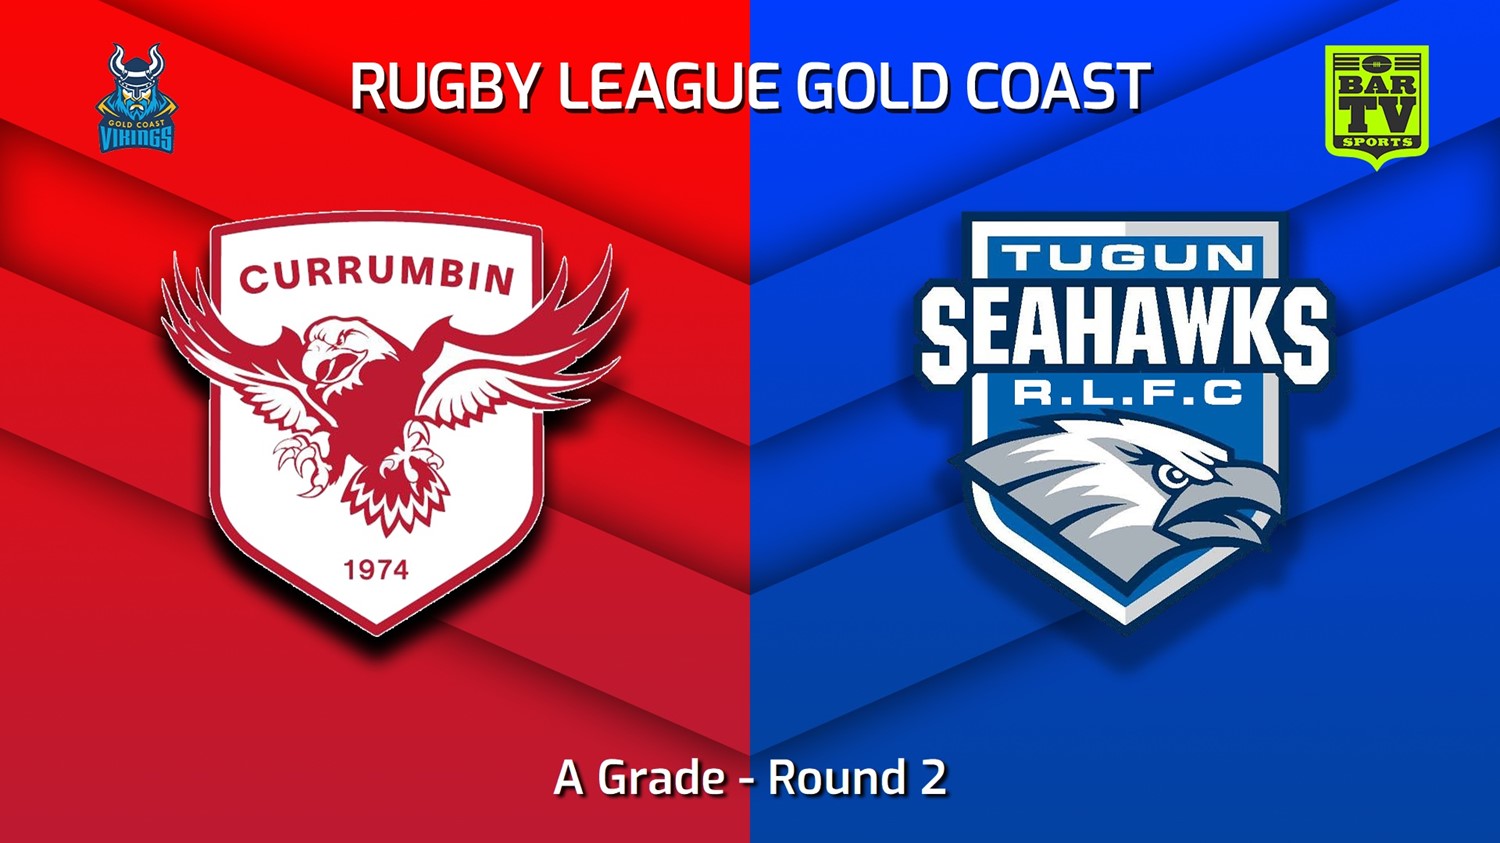 230423-Gold Coast Round 2 - A Grade - Currumbin Eagles v Tugun Seahawks Minigame Slate Image